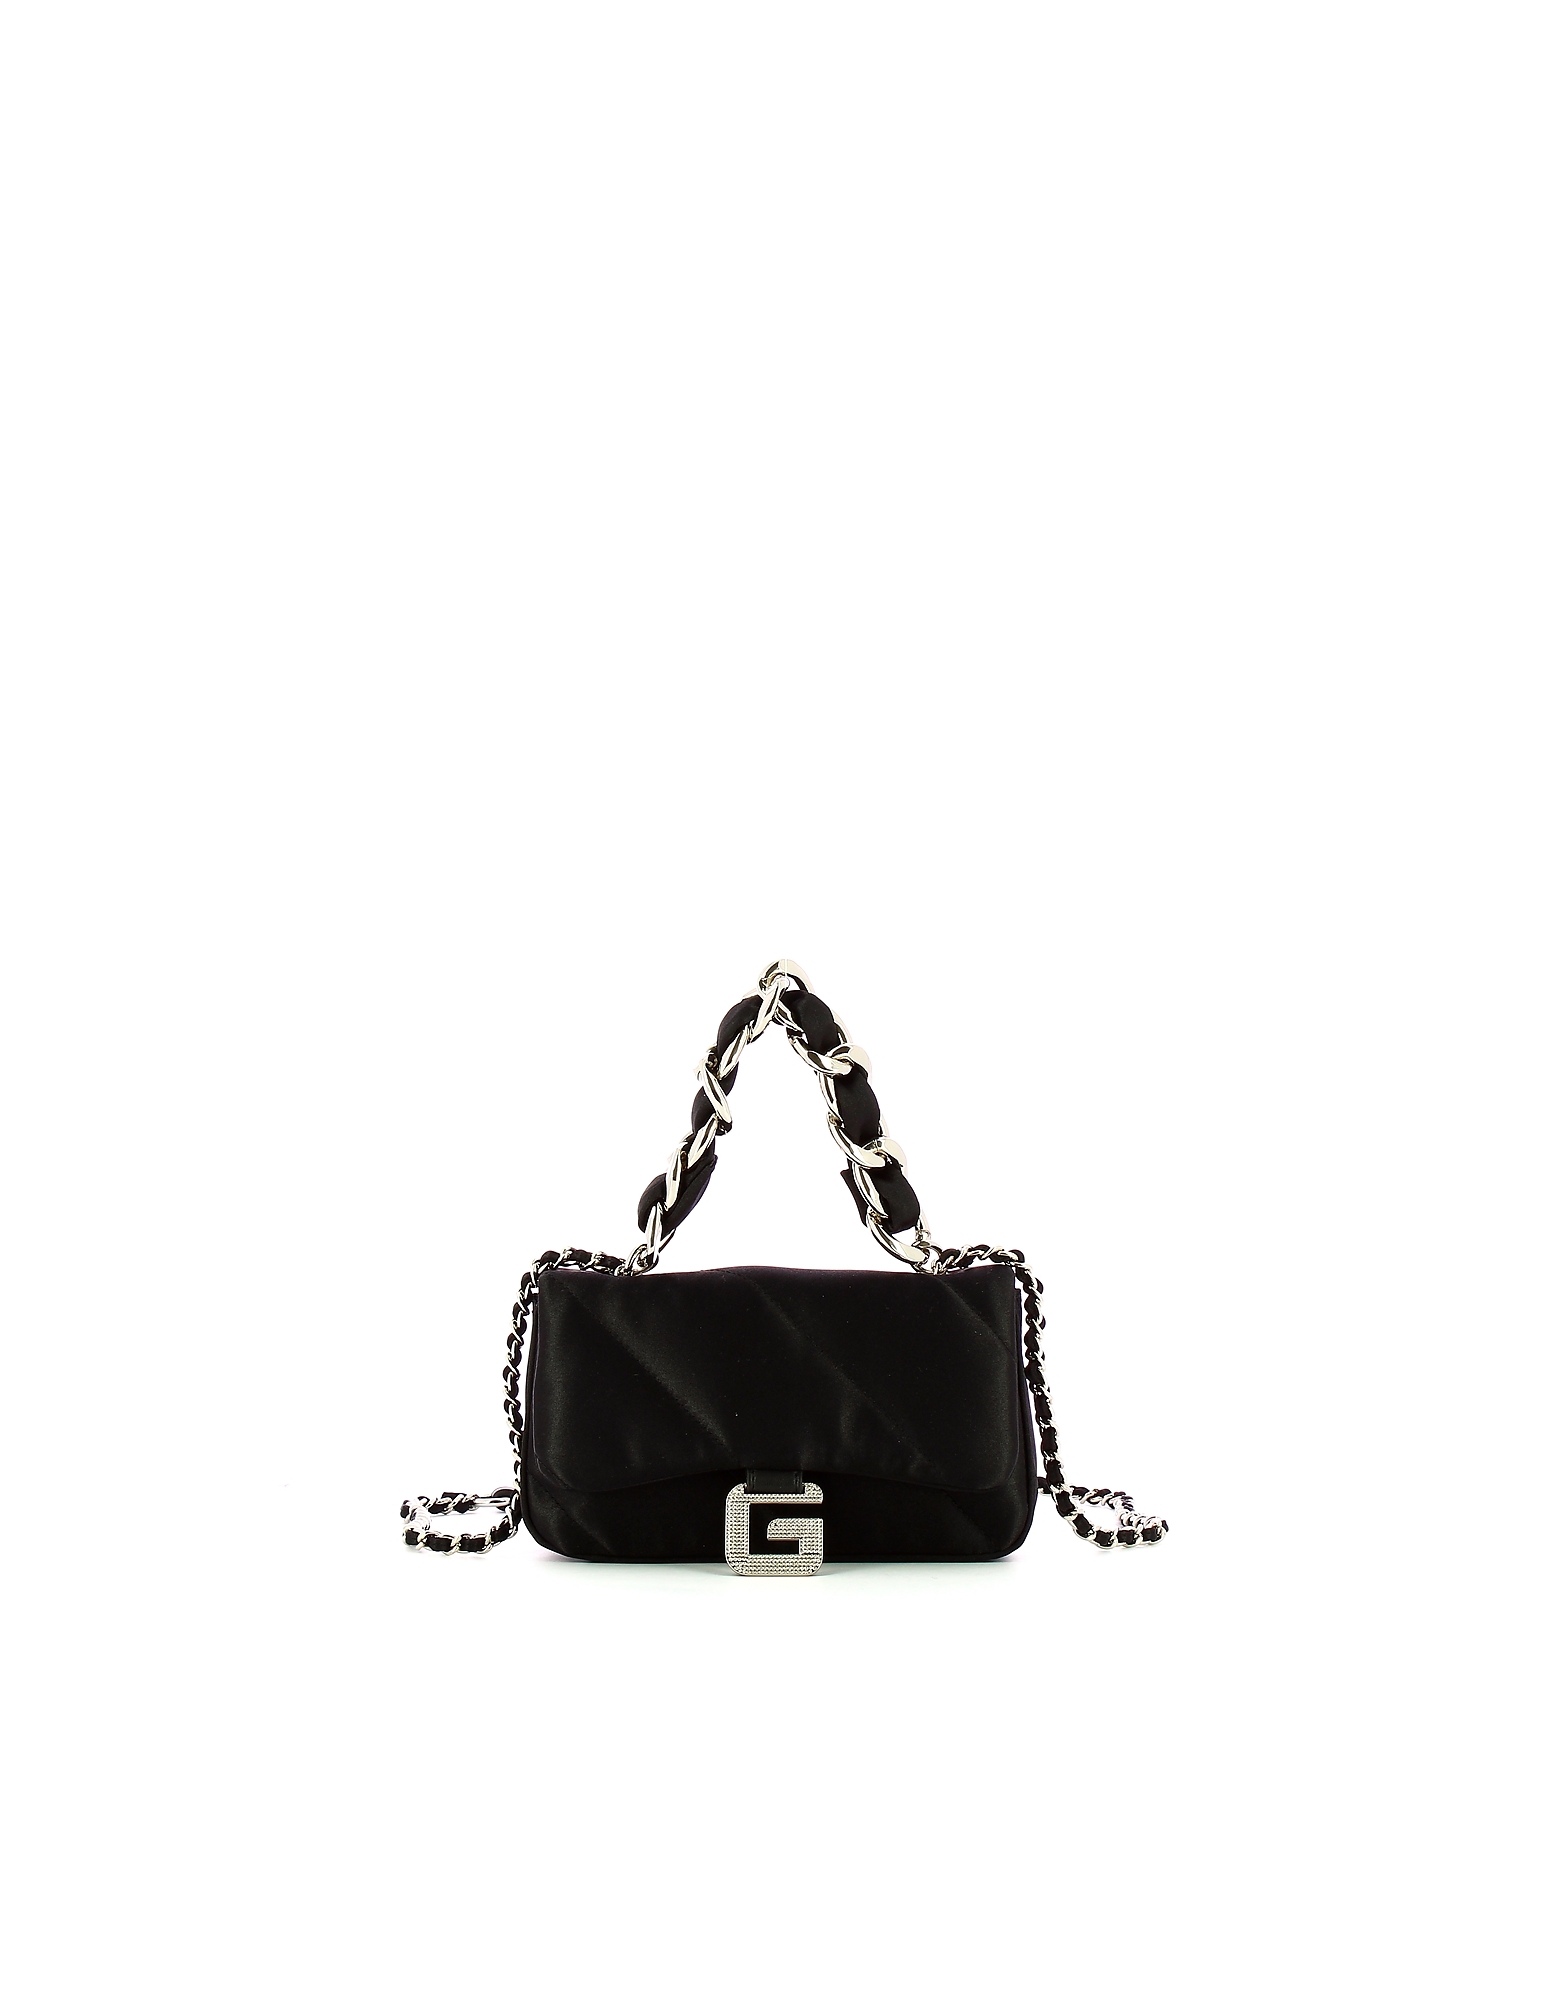 Gaelle Paris Designer Handbags Women's Mini Bag